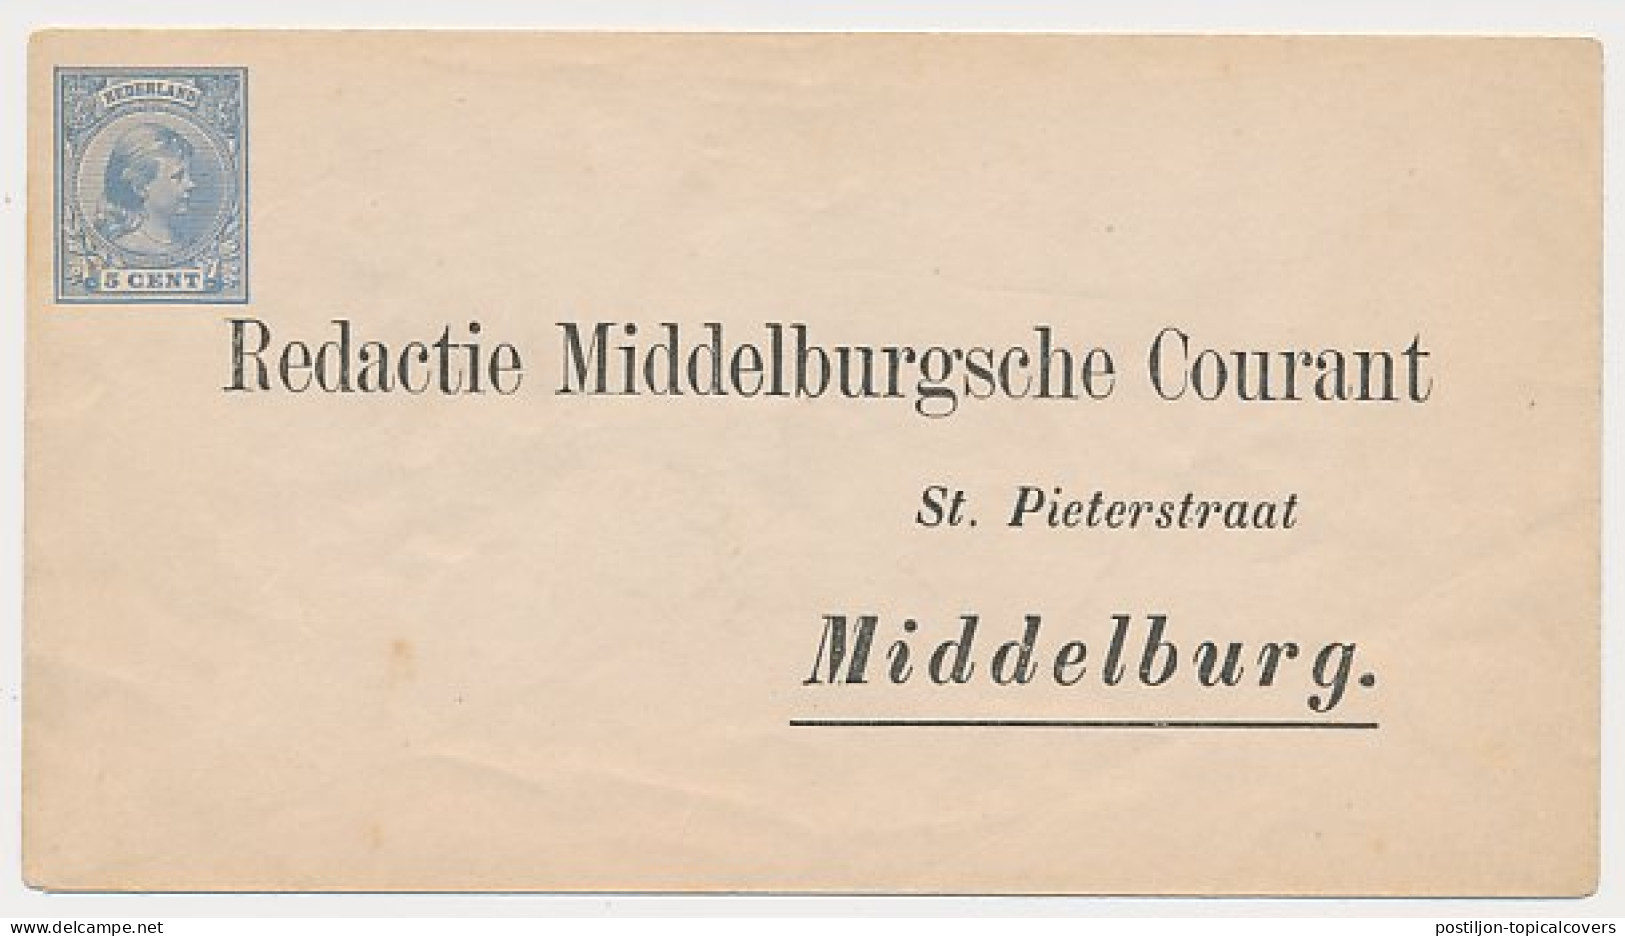 Envelop G. 5 Particulier Bedrukt Middelburg - Postal Stationery